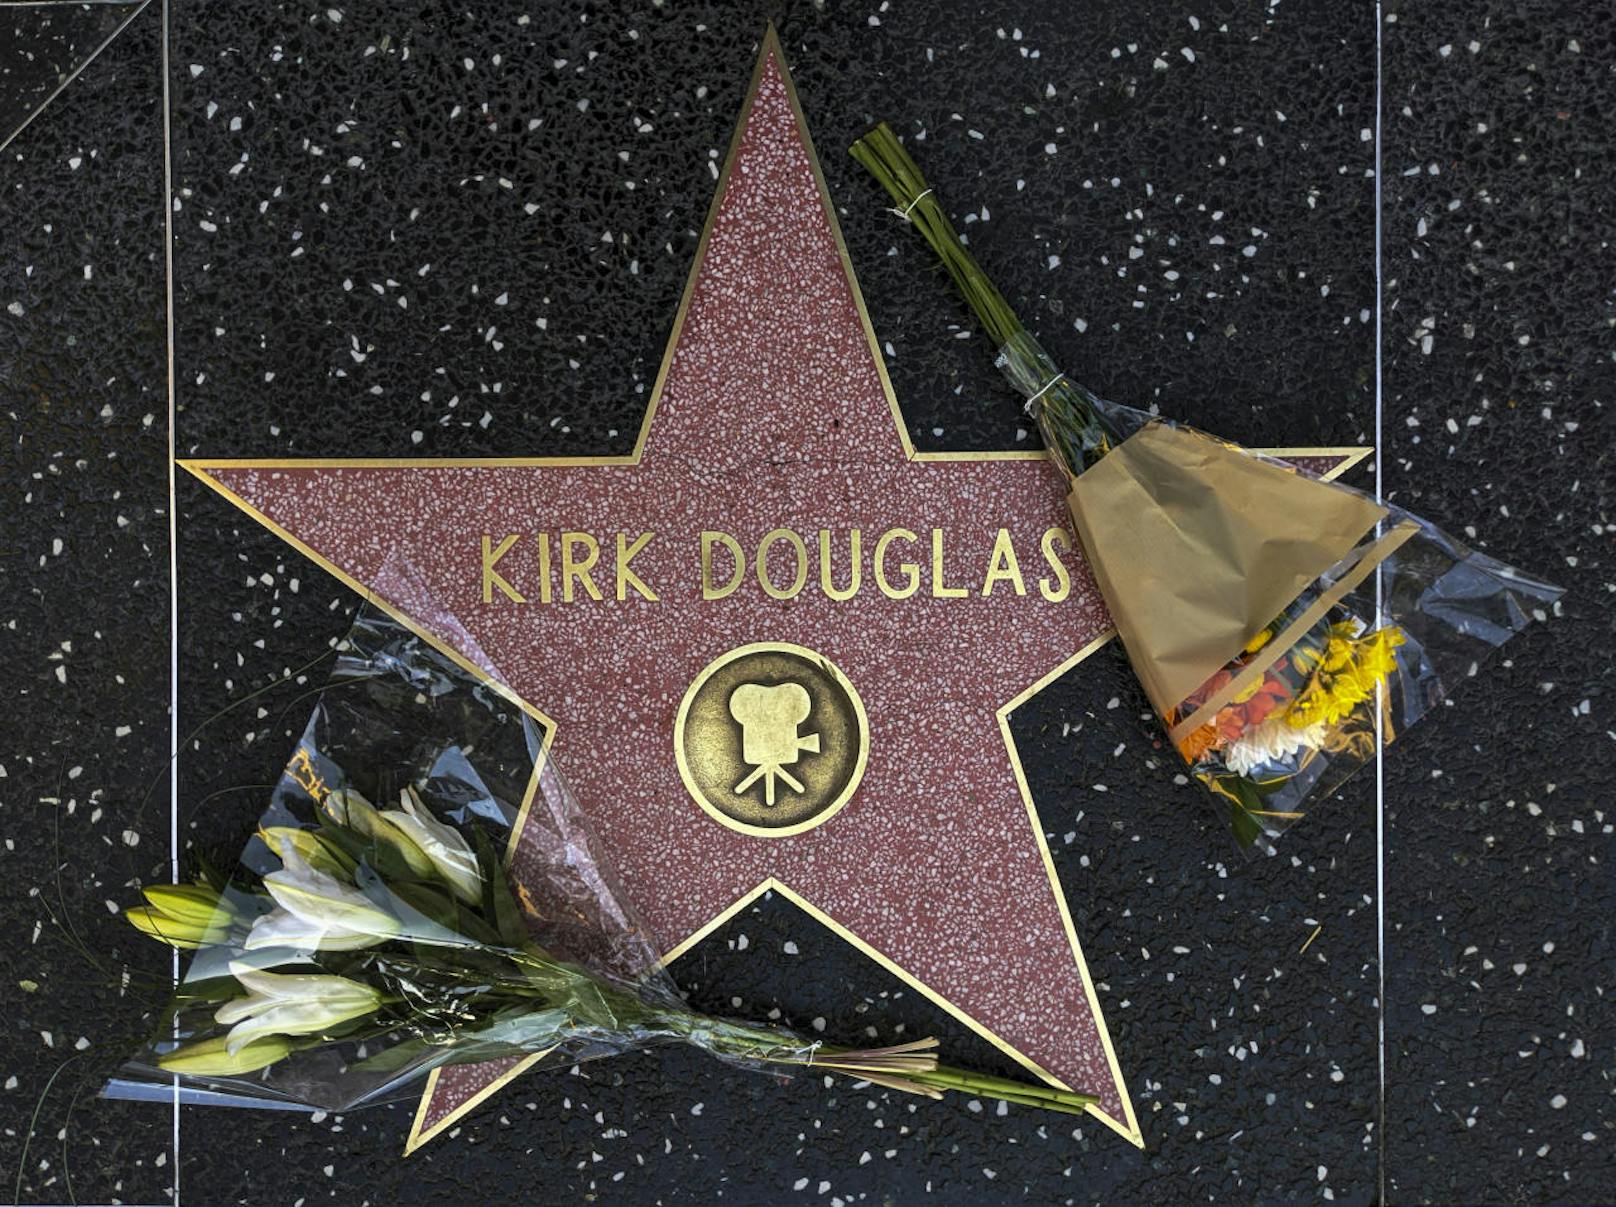 Fans legten Blumen für den verstorbenen Kirk Douglas auf dessen Stern am Walk of Fame in Hollywood nieder.